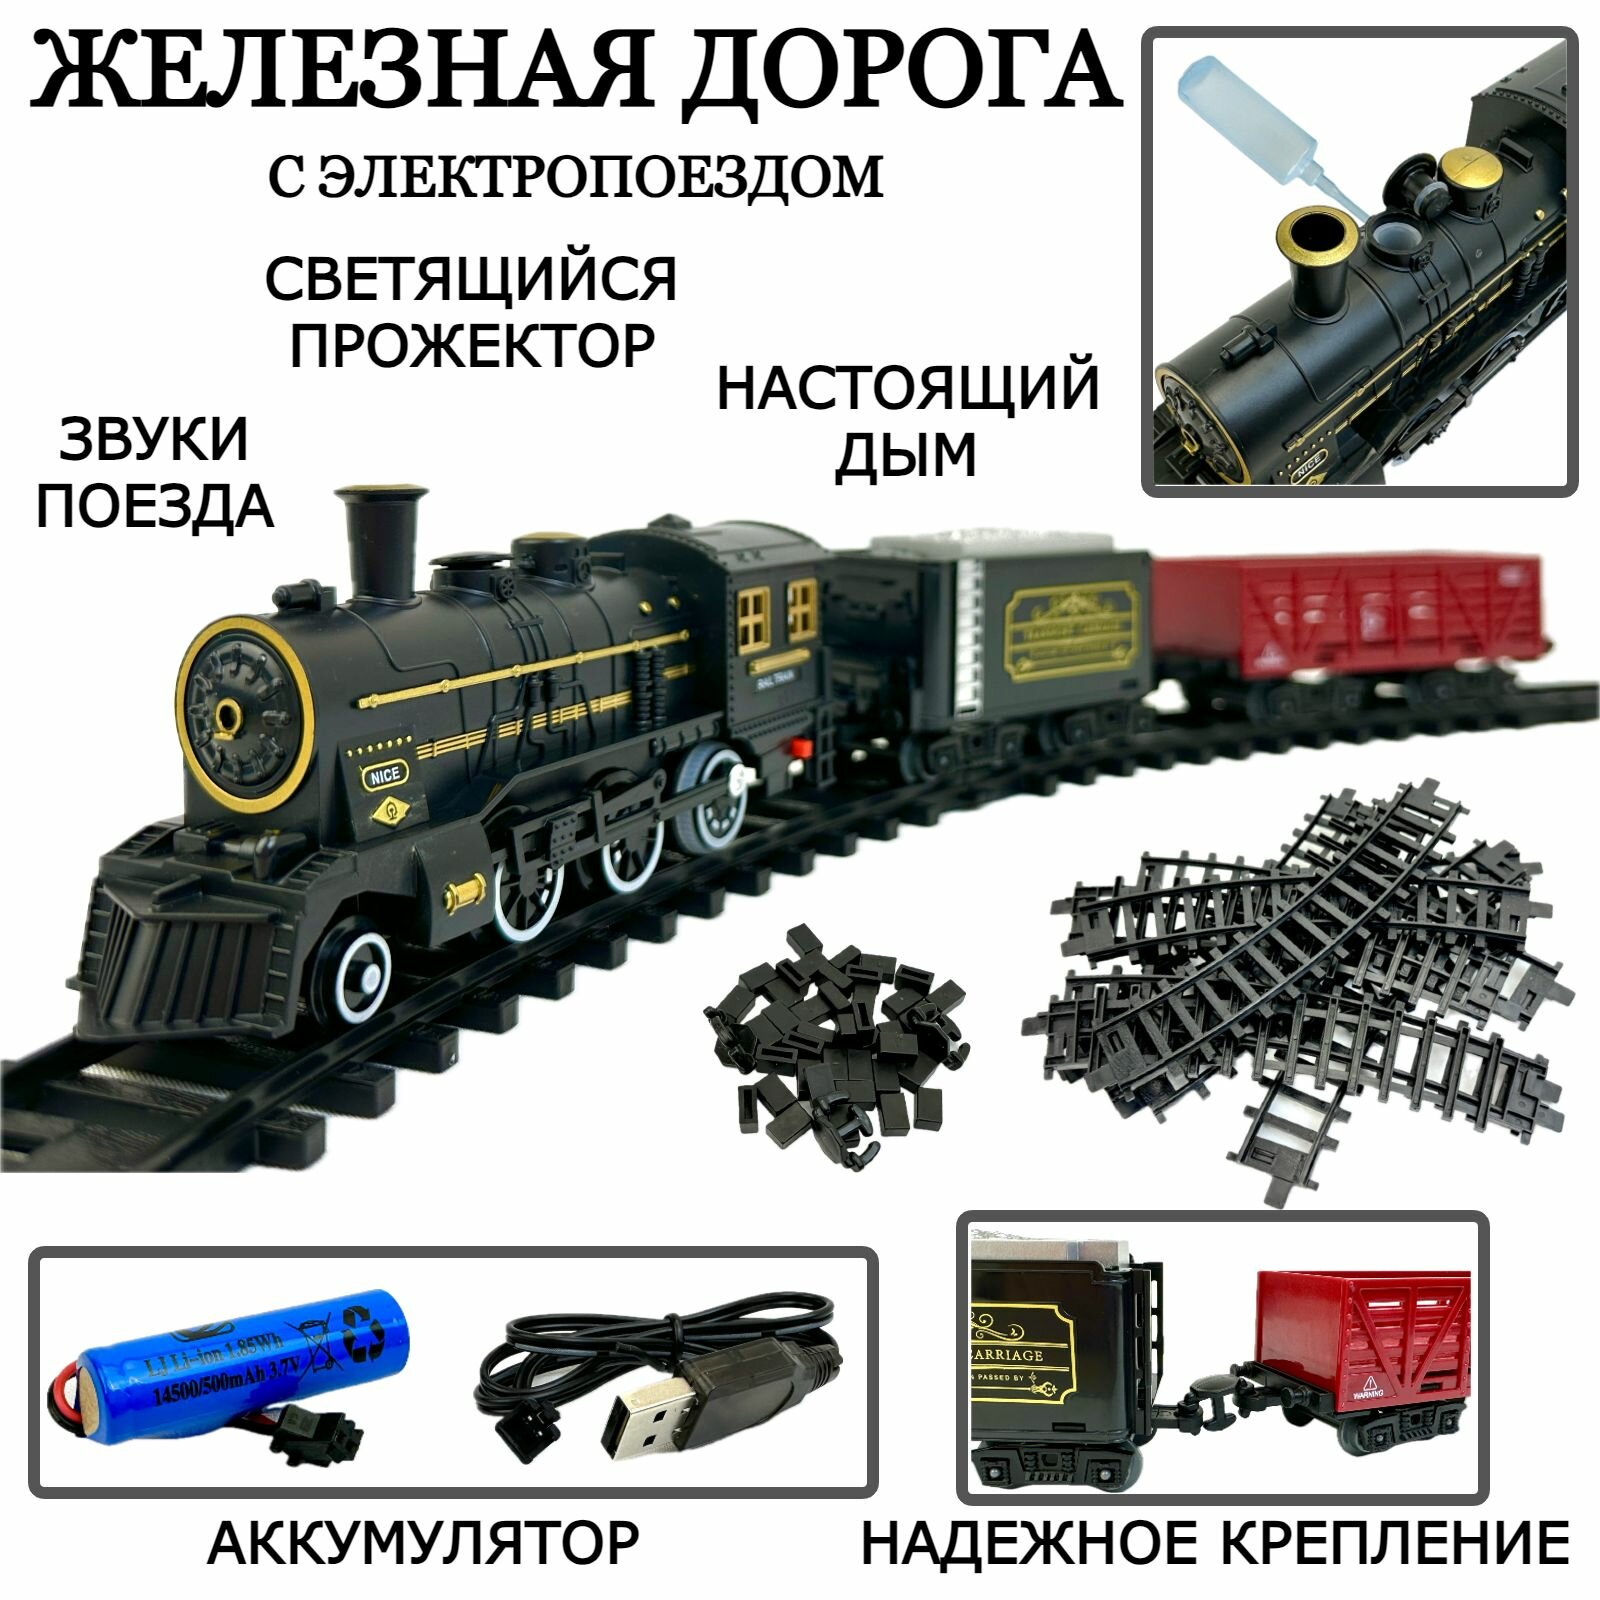 Детская железная дорога с поездом Classic Train, 15 элементов, размер дороги 100х100 см, поезд, 2 вагона, дым, светящийся прожектор, звук